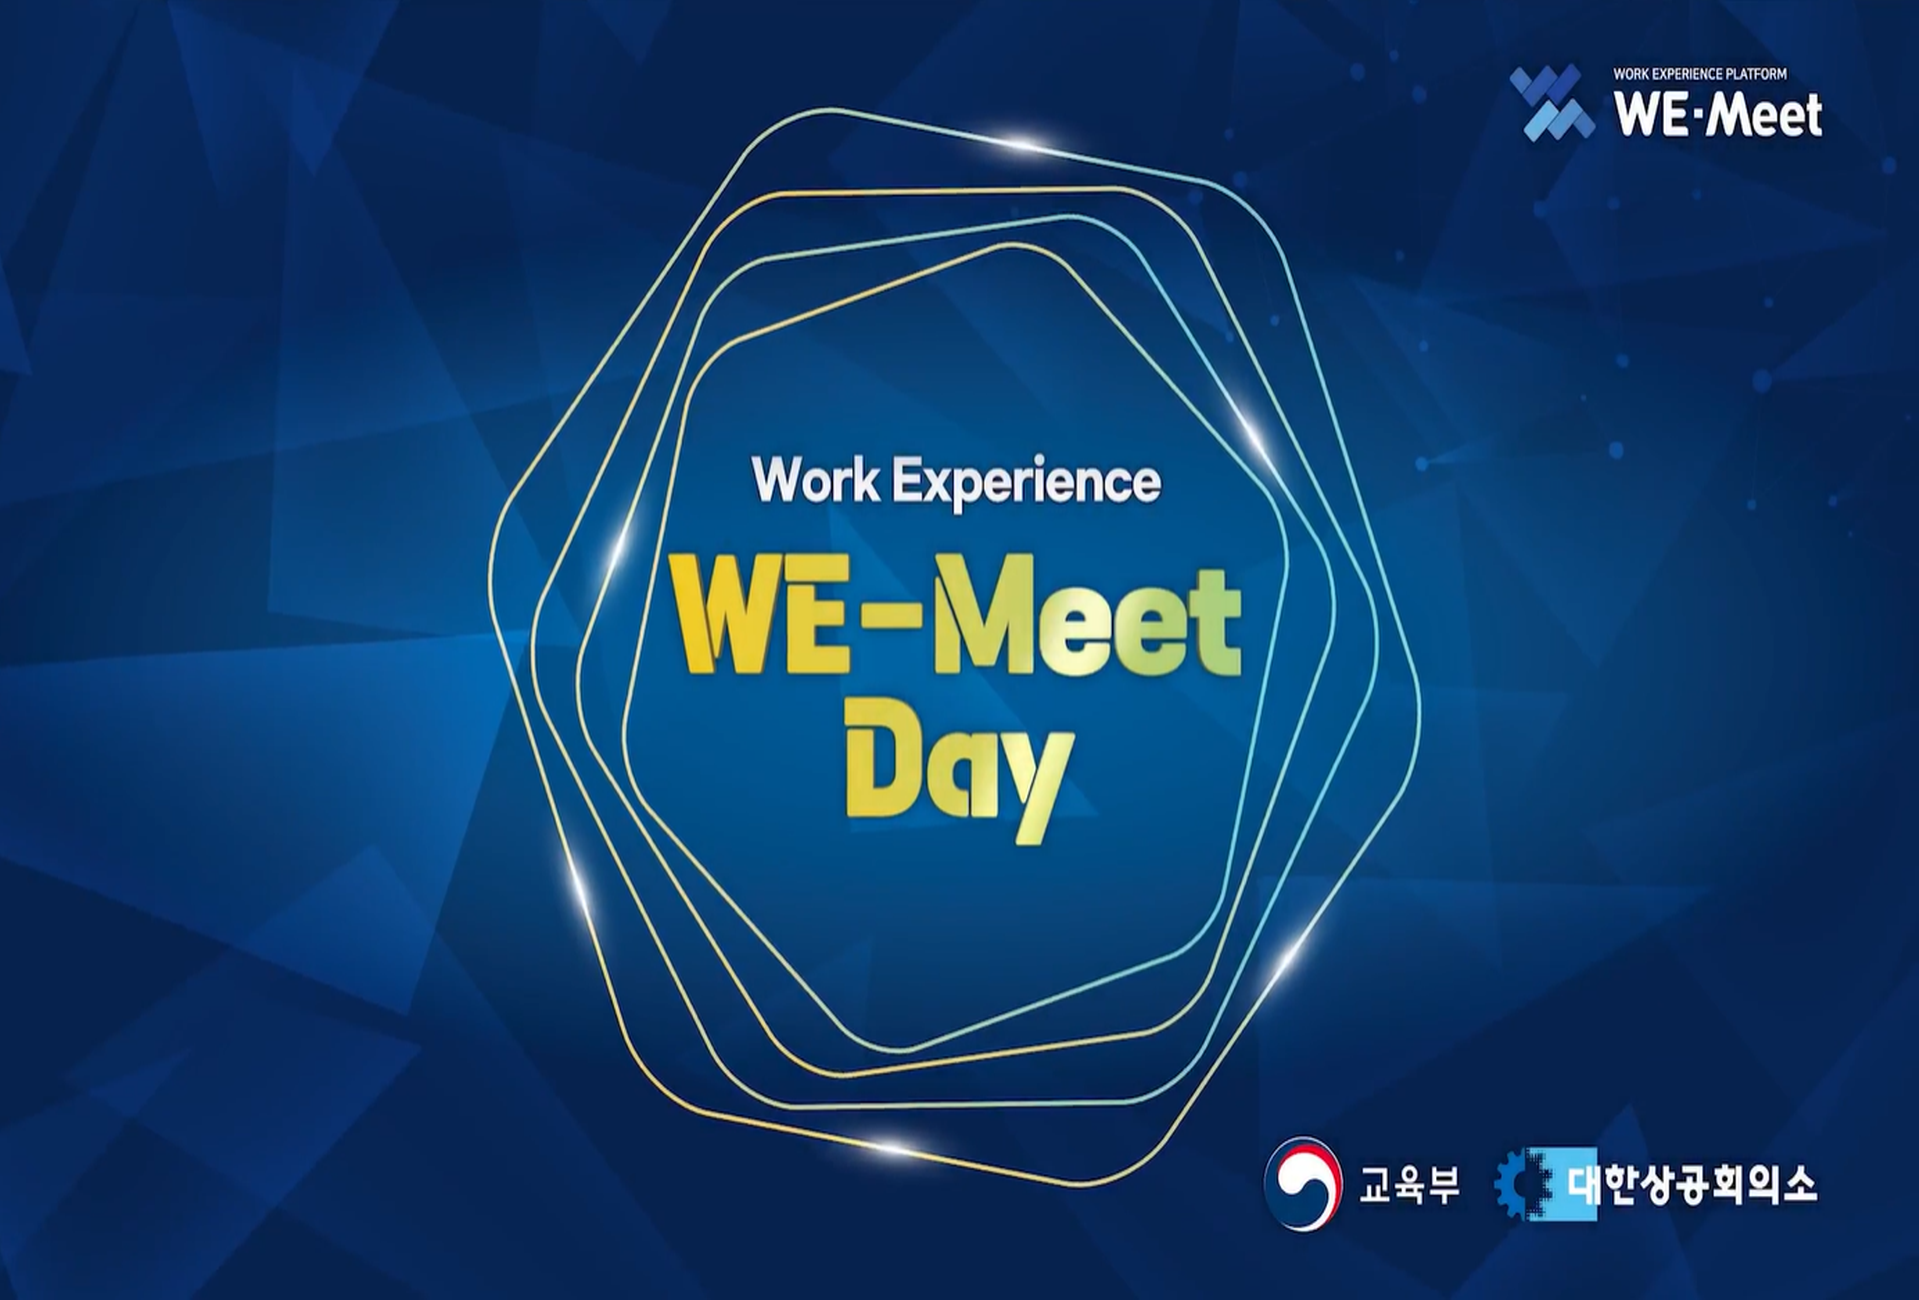 [위밋] WE-Meet Day 행사 스케치 영상